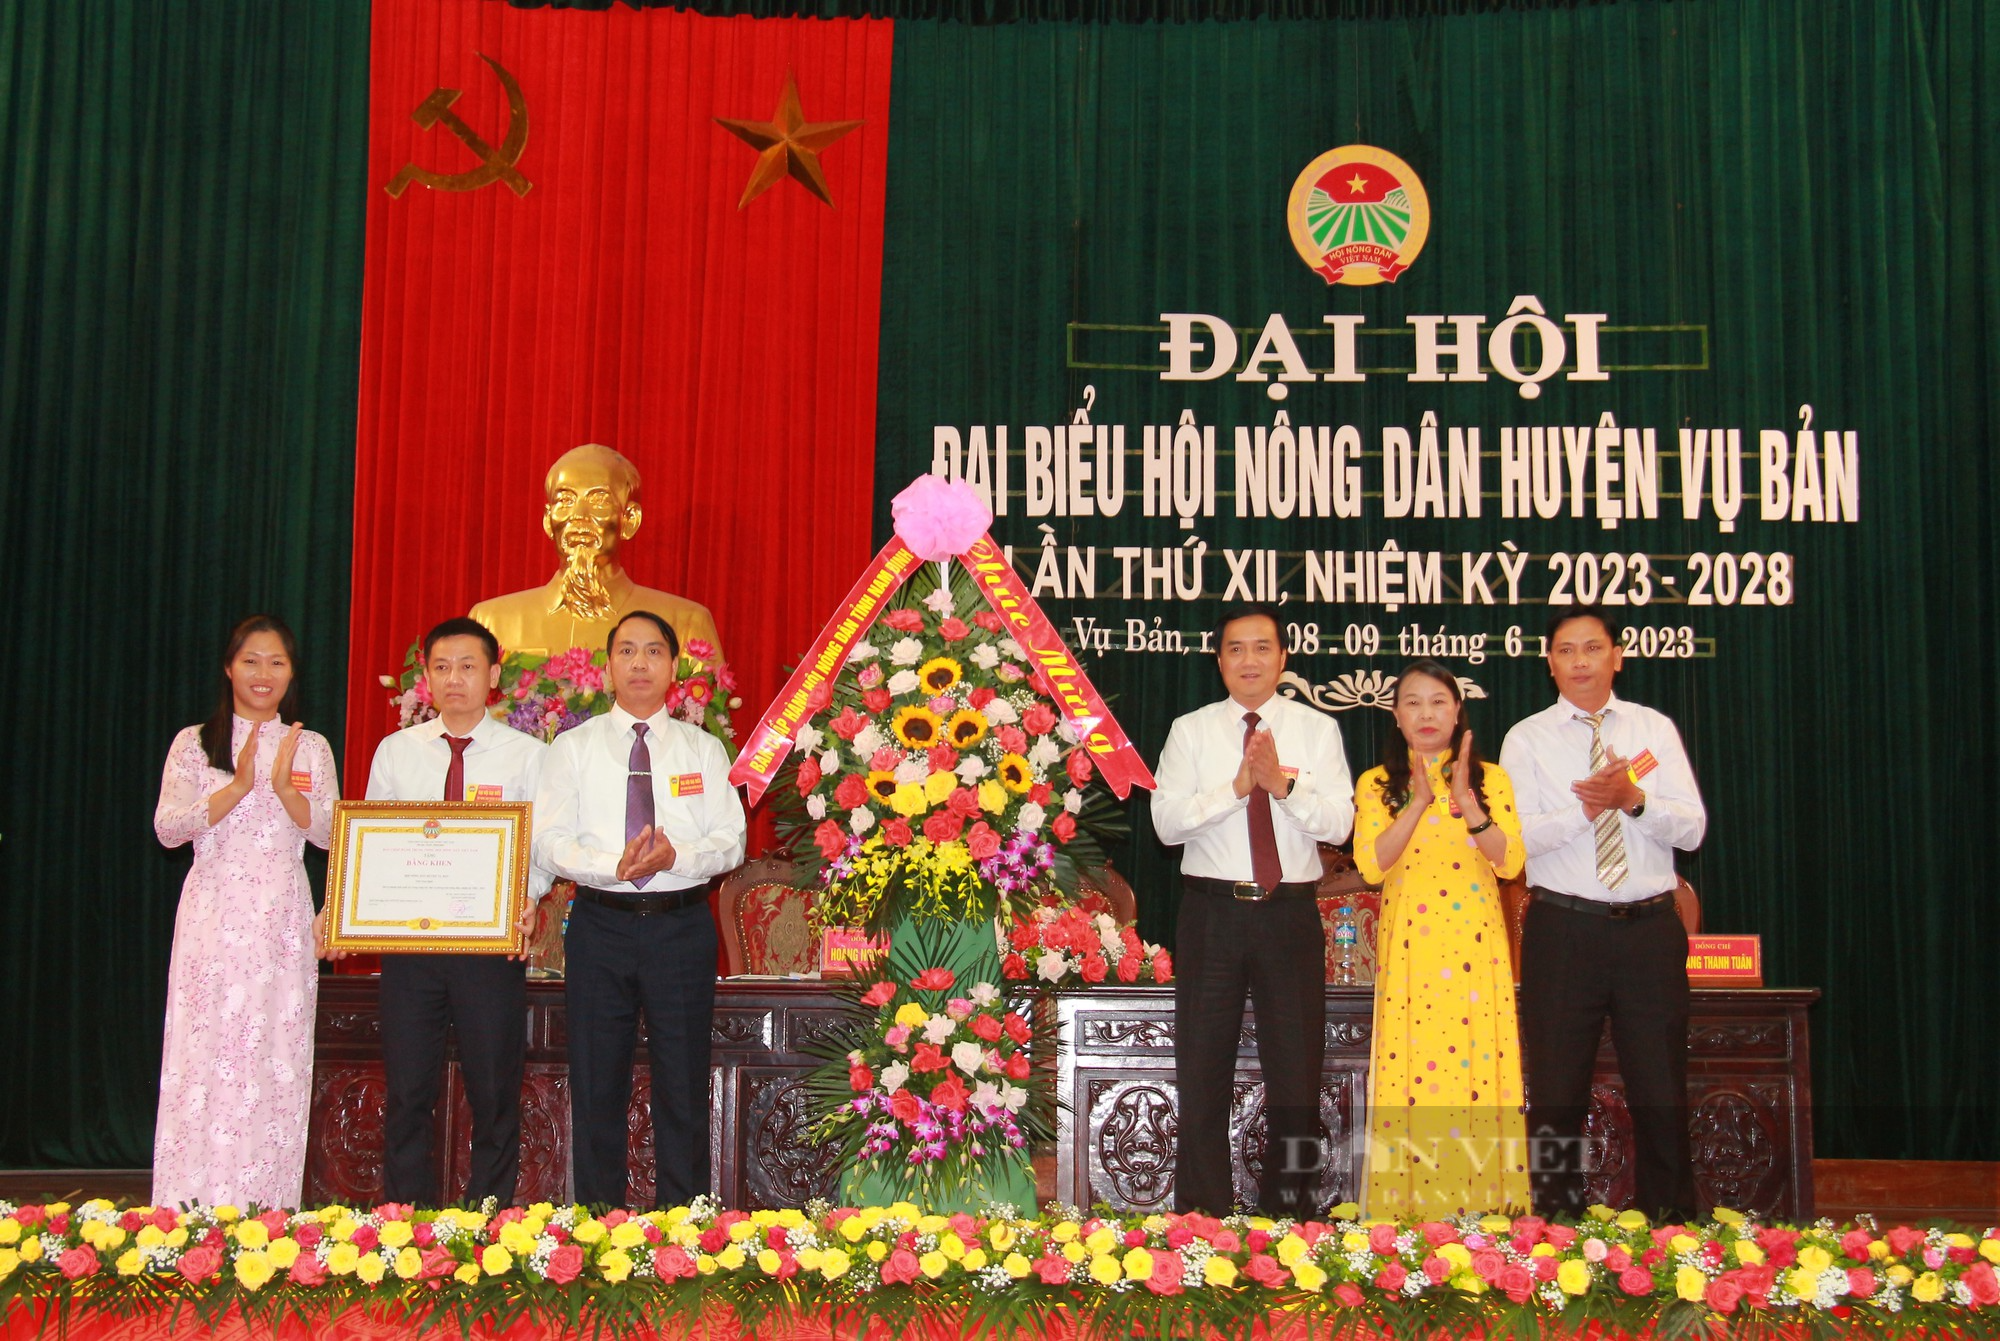 Đại hội Hội Nông dân huyện Vụ Bản, ông Hoàng Ngọc Nghị tái đắc cử chức Chủ tịch Hội Nông dân huyện - Ảnh 3.